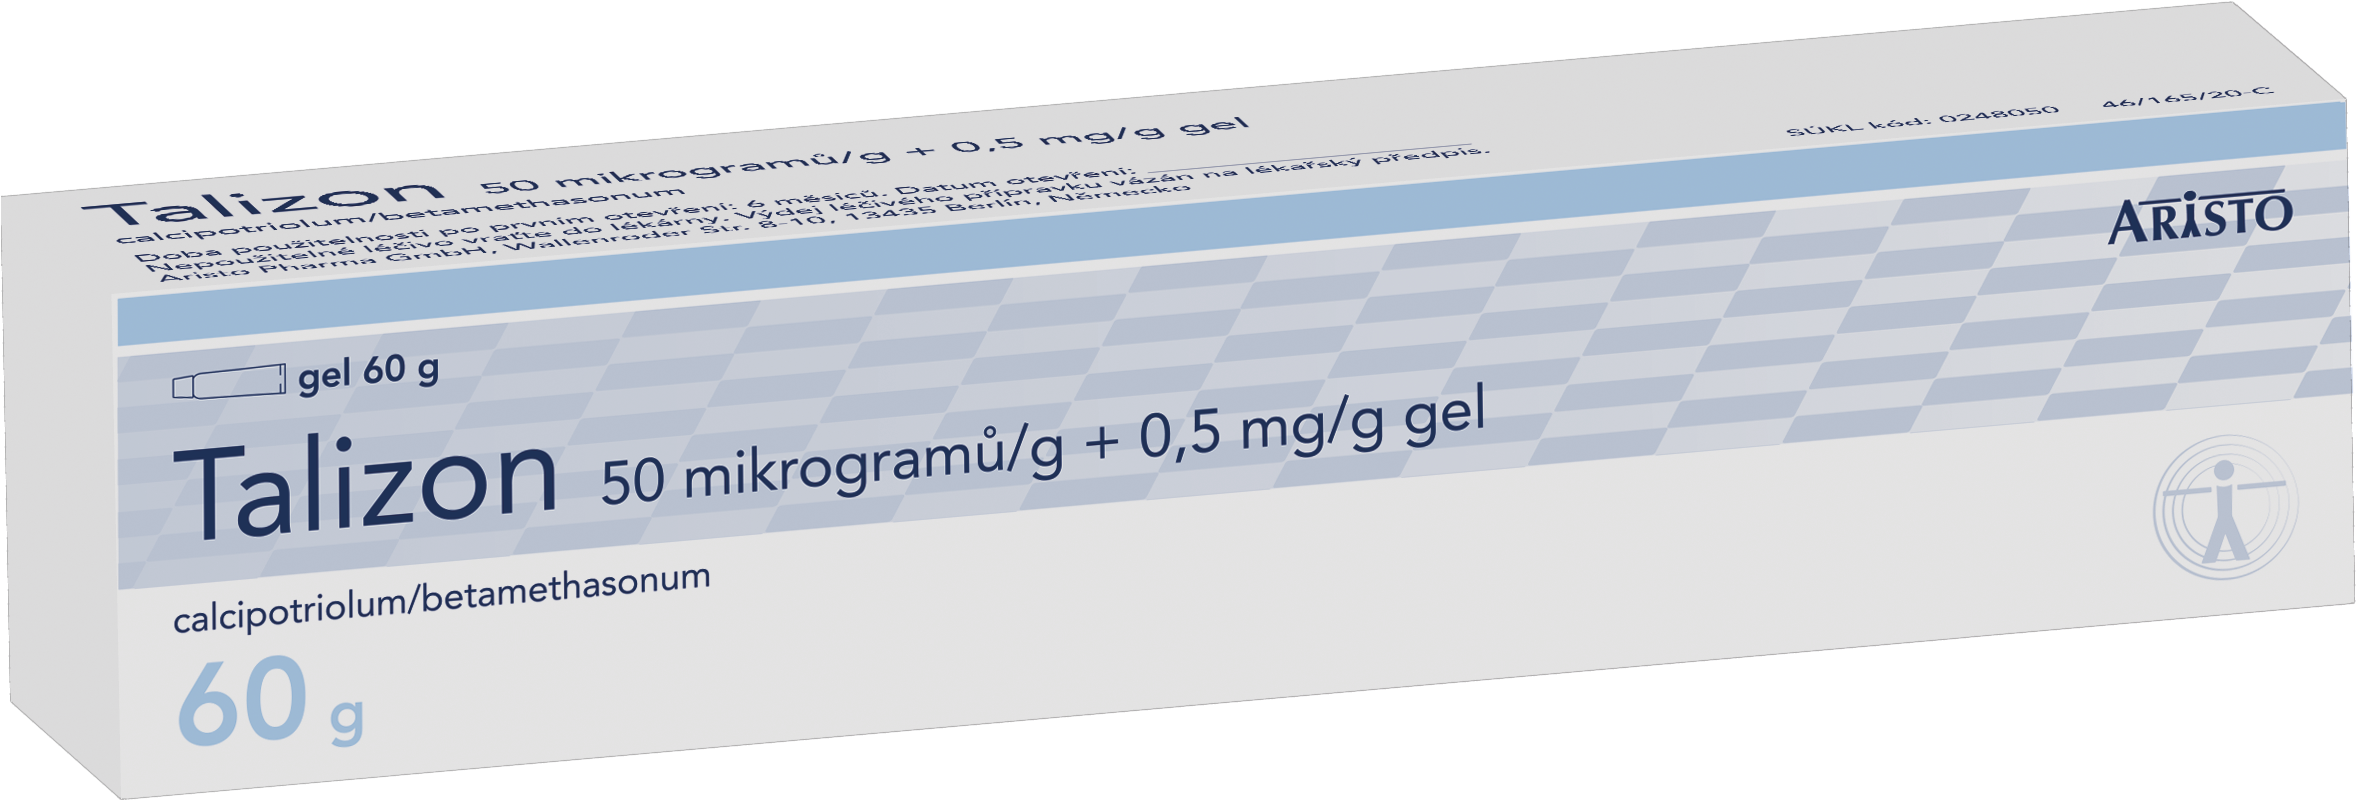 Talizon 50 mikrogramů/g + 0,5 mg/g